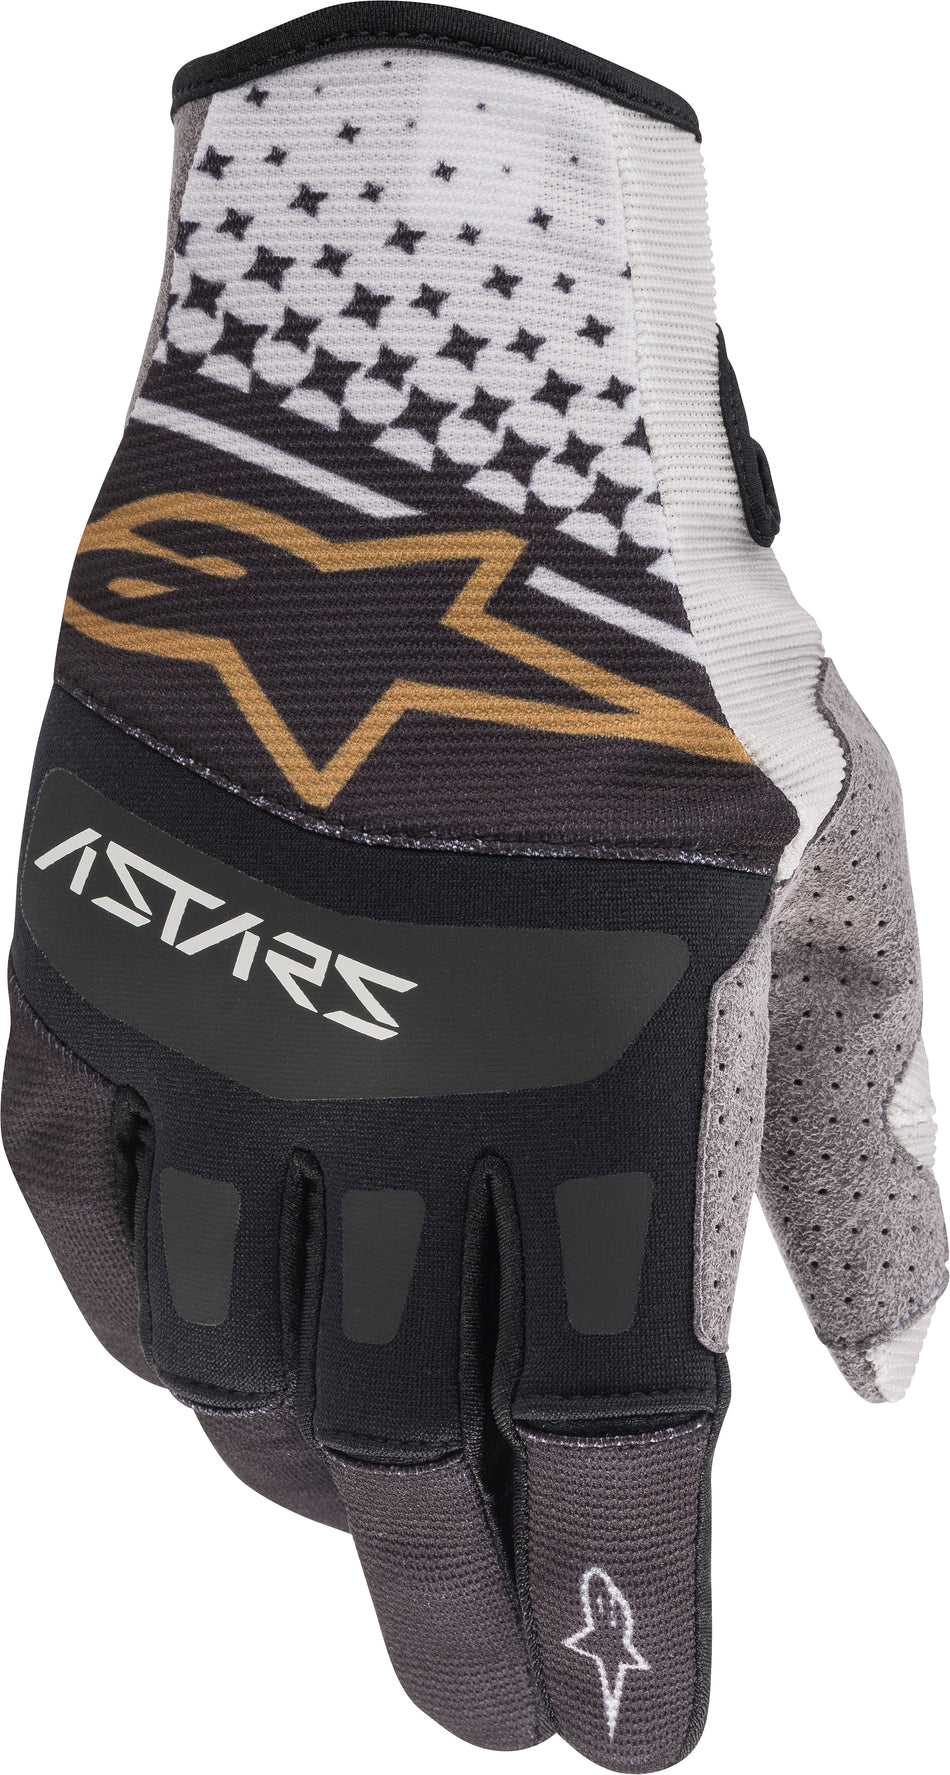 ALPINESTARS Techstar Gloves Greyblackcopper Lg 3561020-9109-L